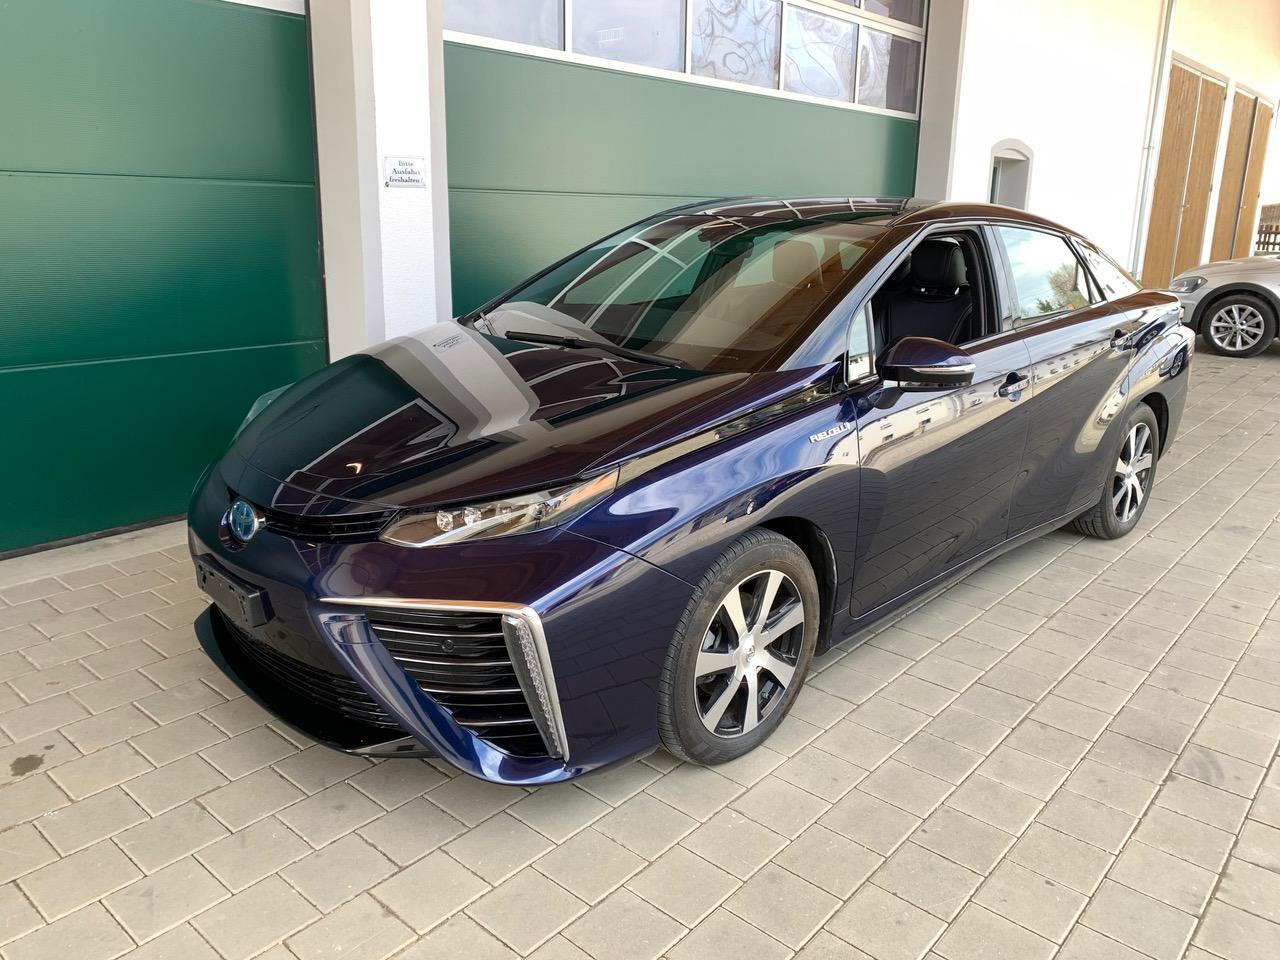 Gebraucht Blau Toyota mirai wasserstoff auto zu Verkaufen Osterreich